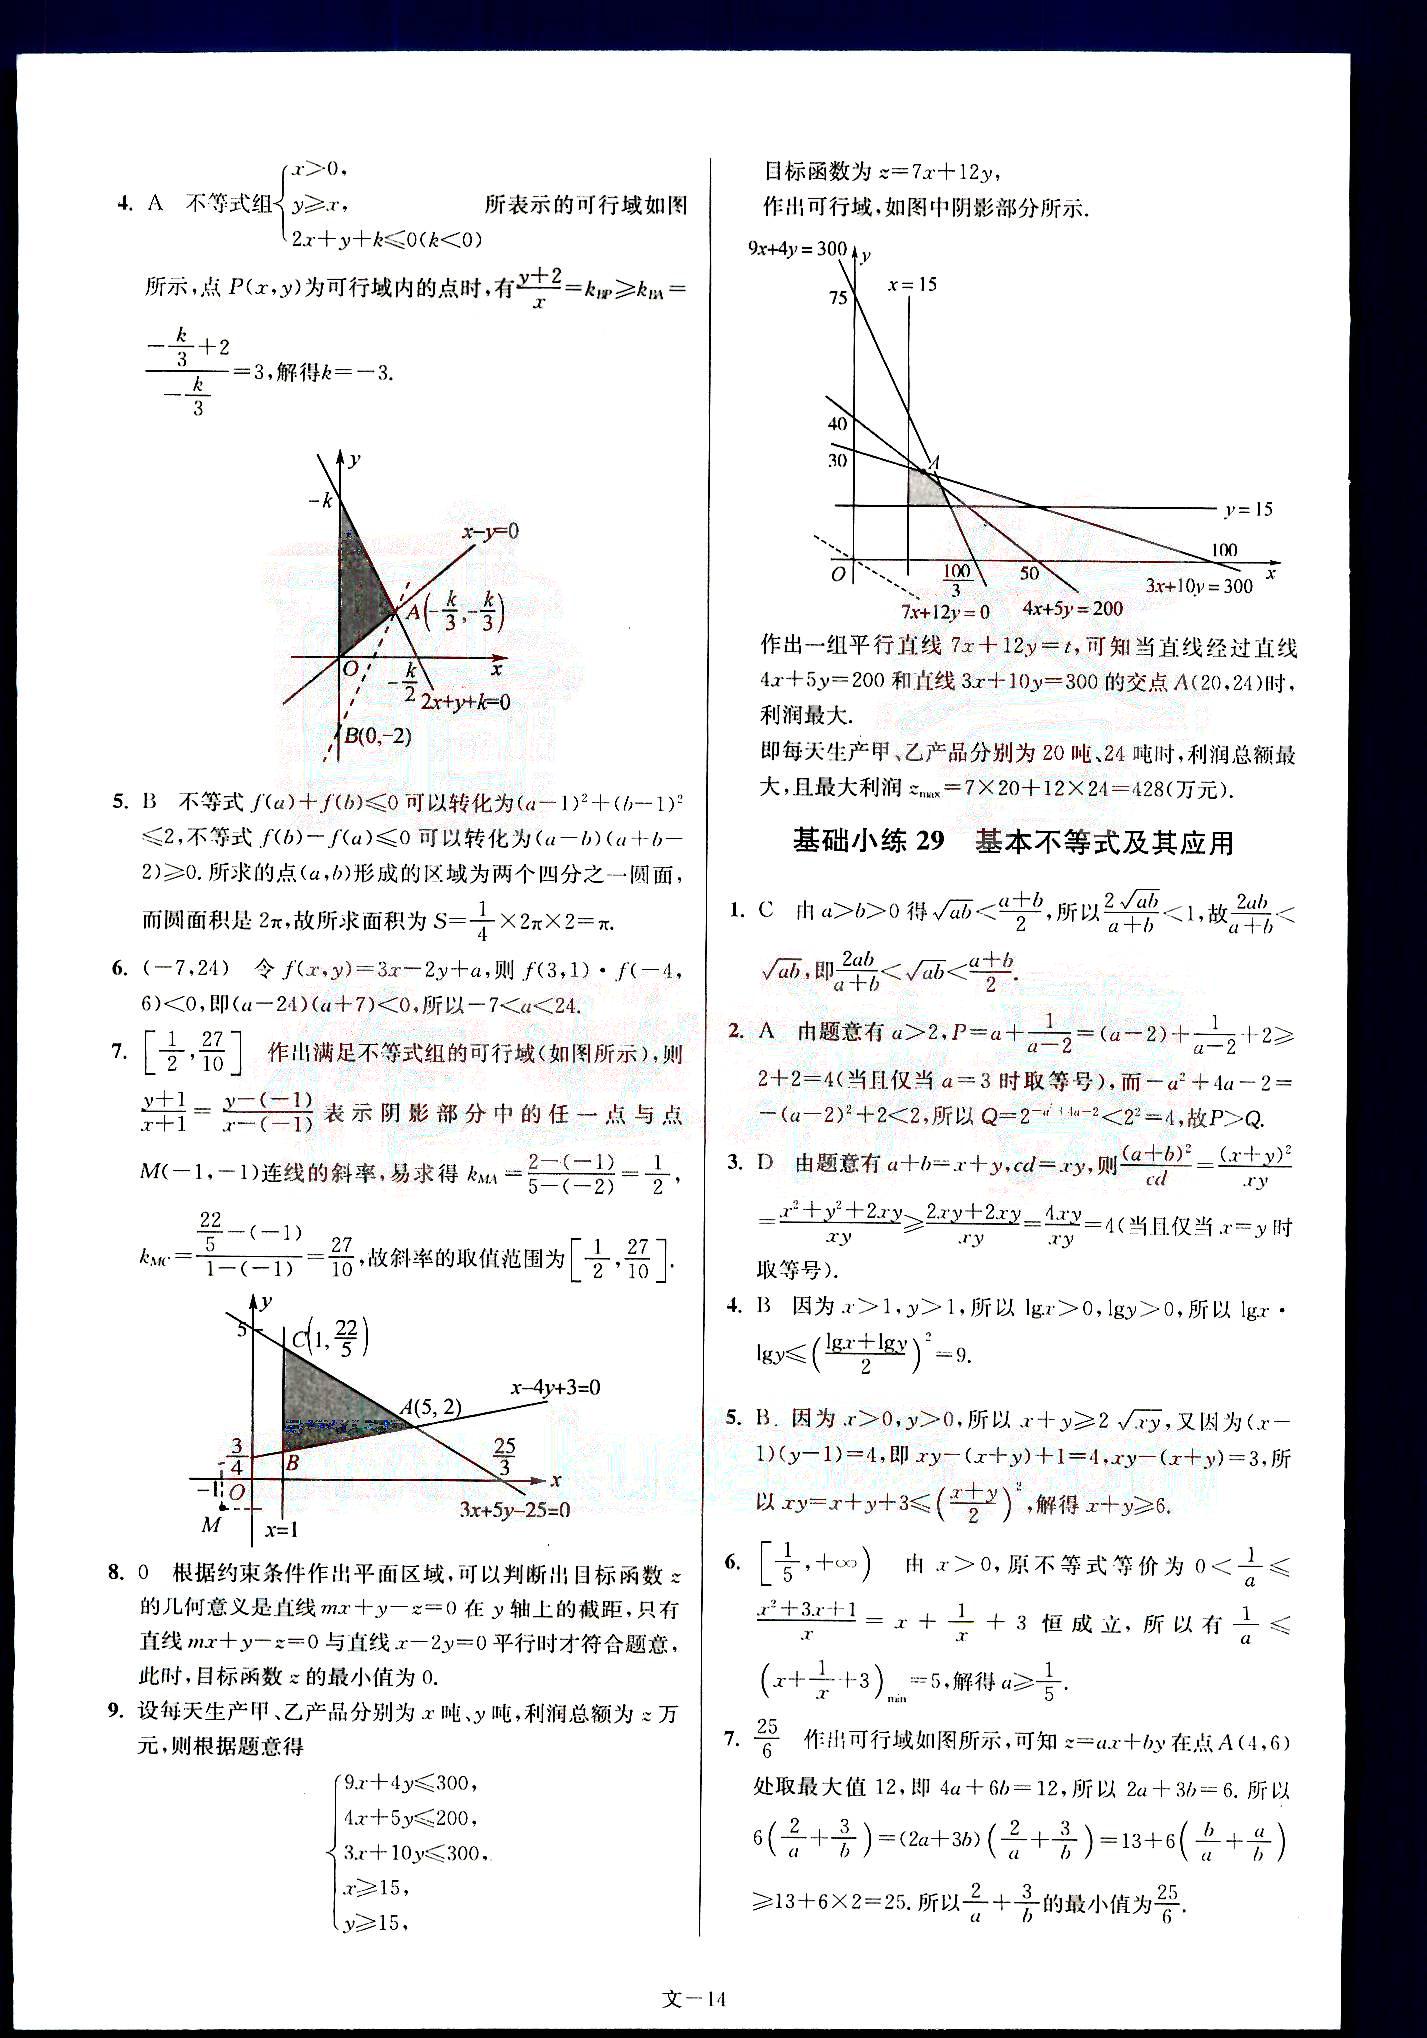 小题狂做-高考数学-文科-最基础篇南京大学出版社 第3部分 [4]